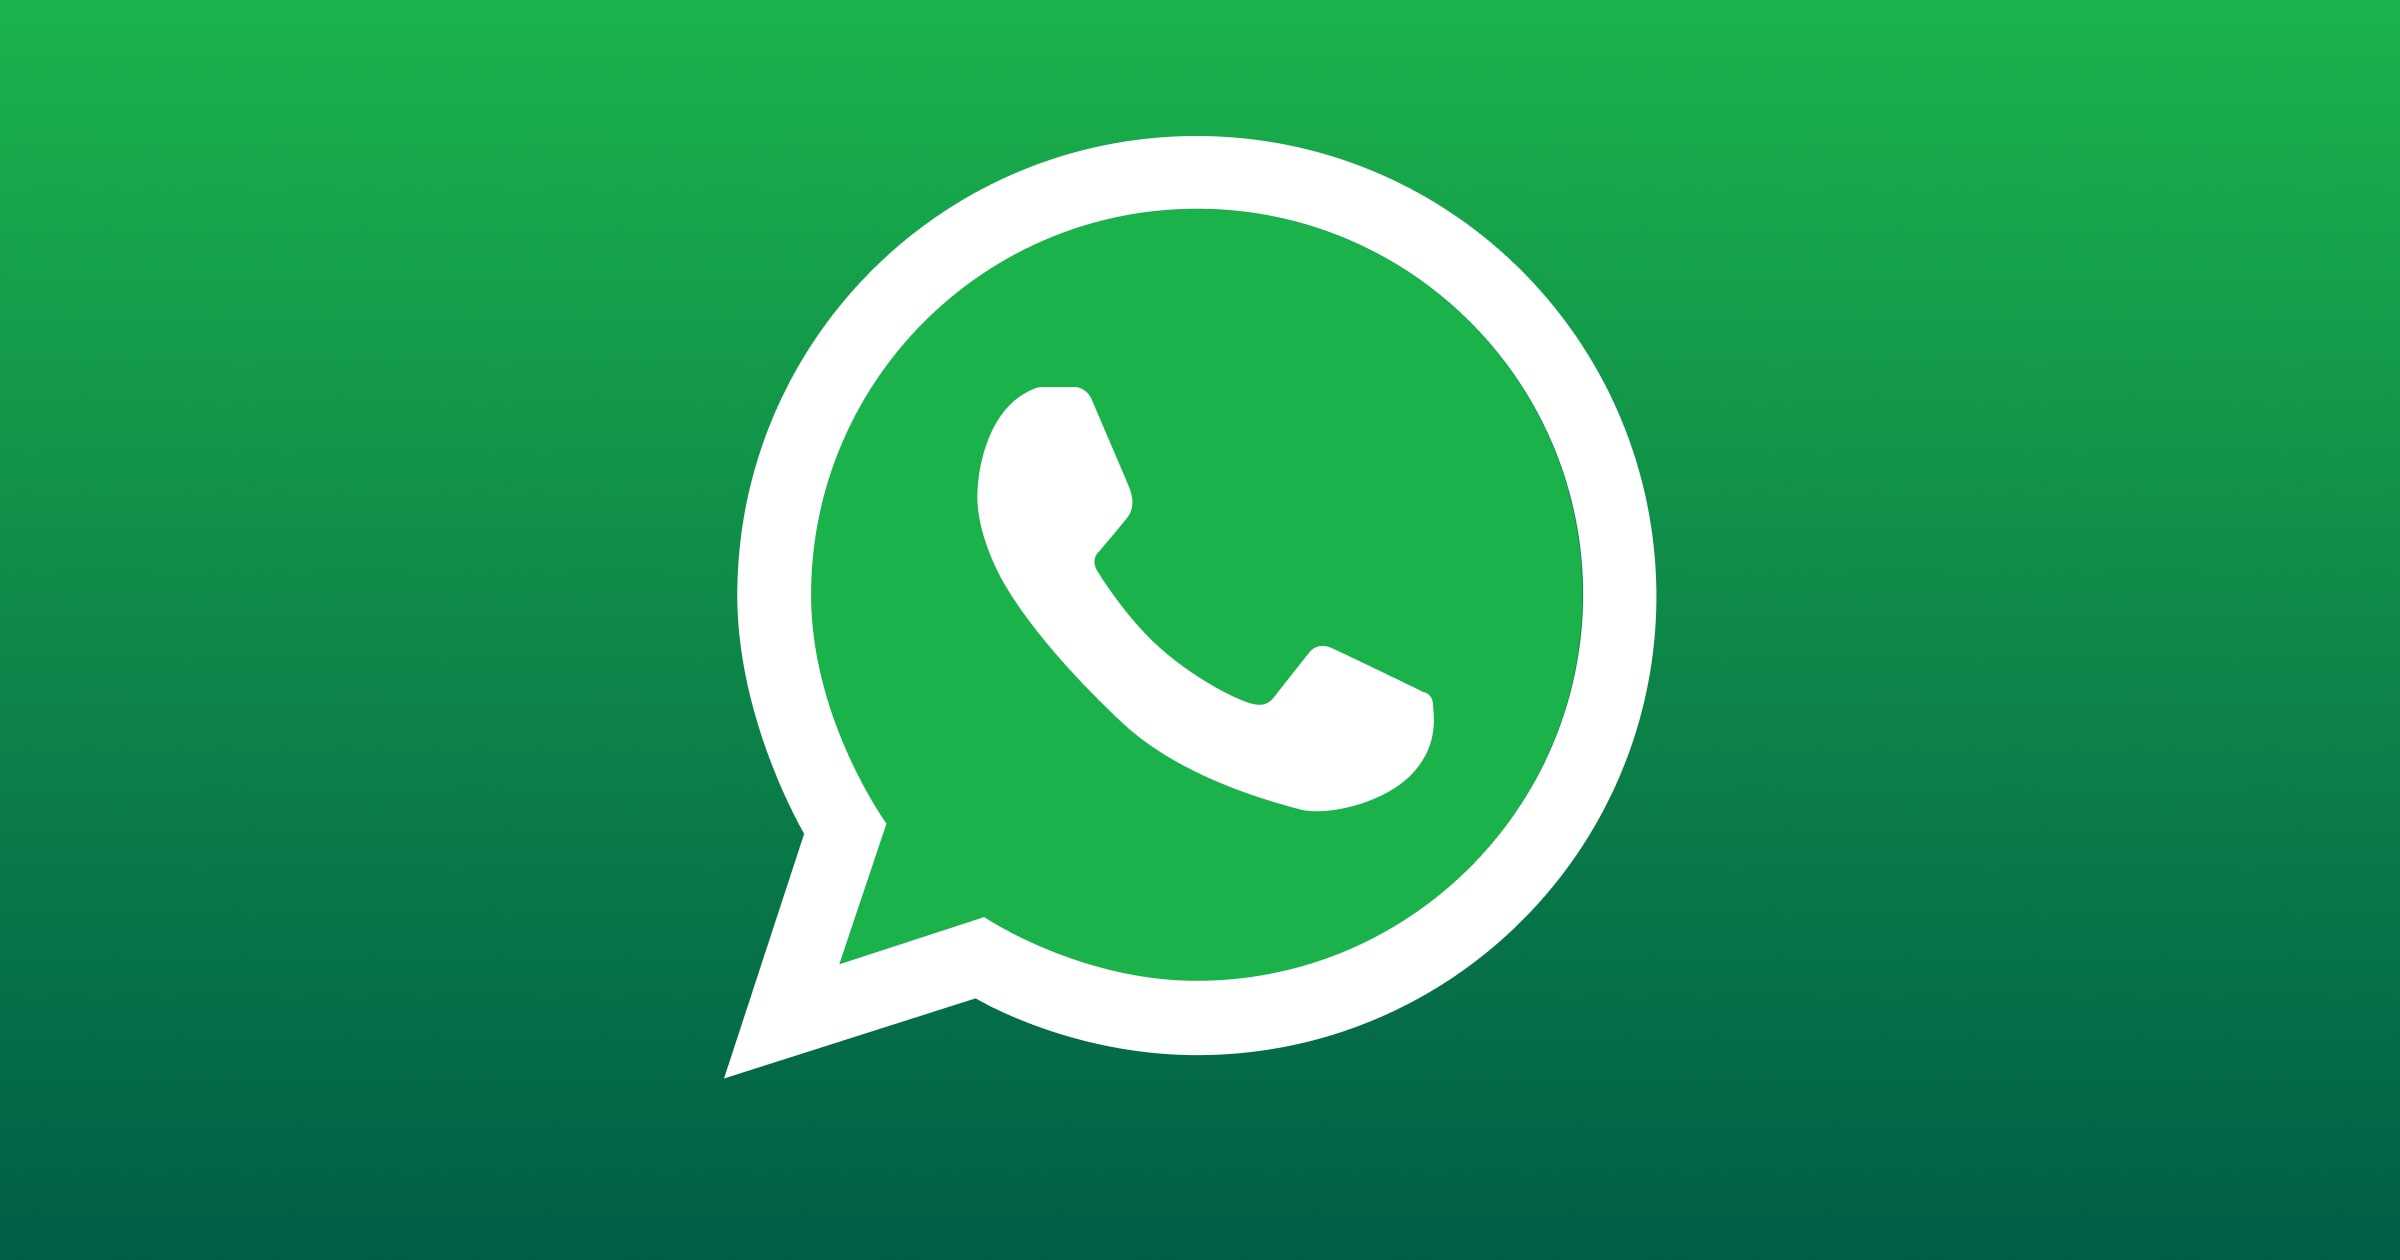 WhatsApp Screening Number